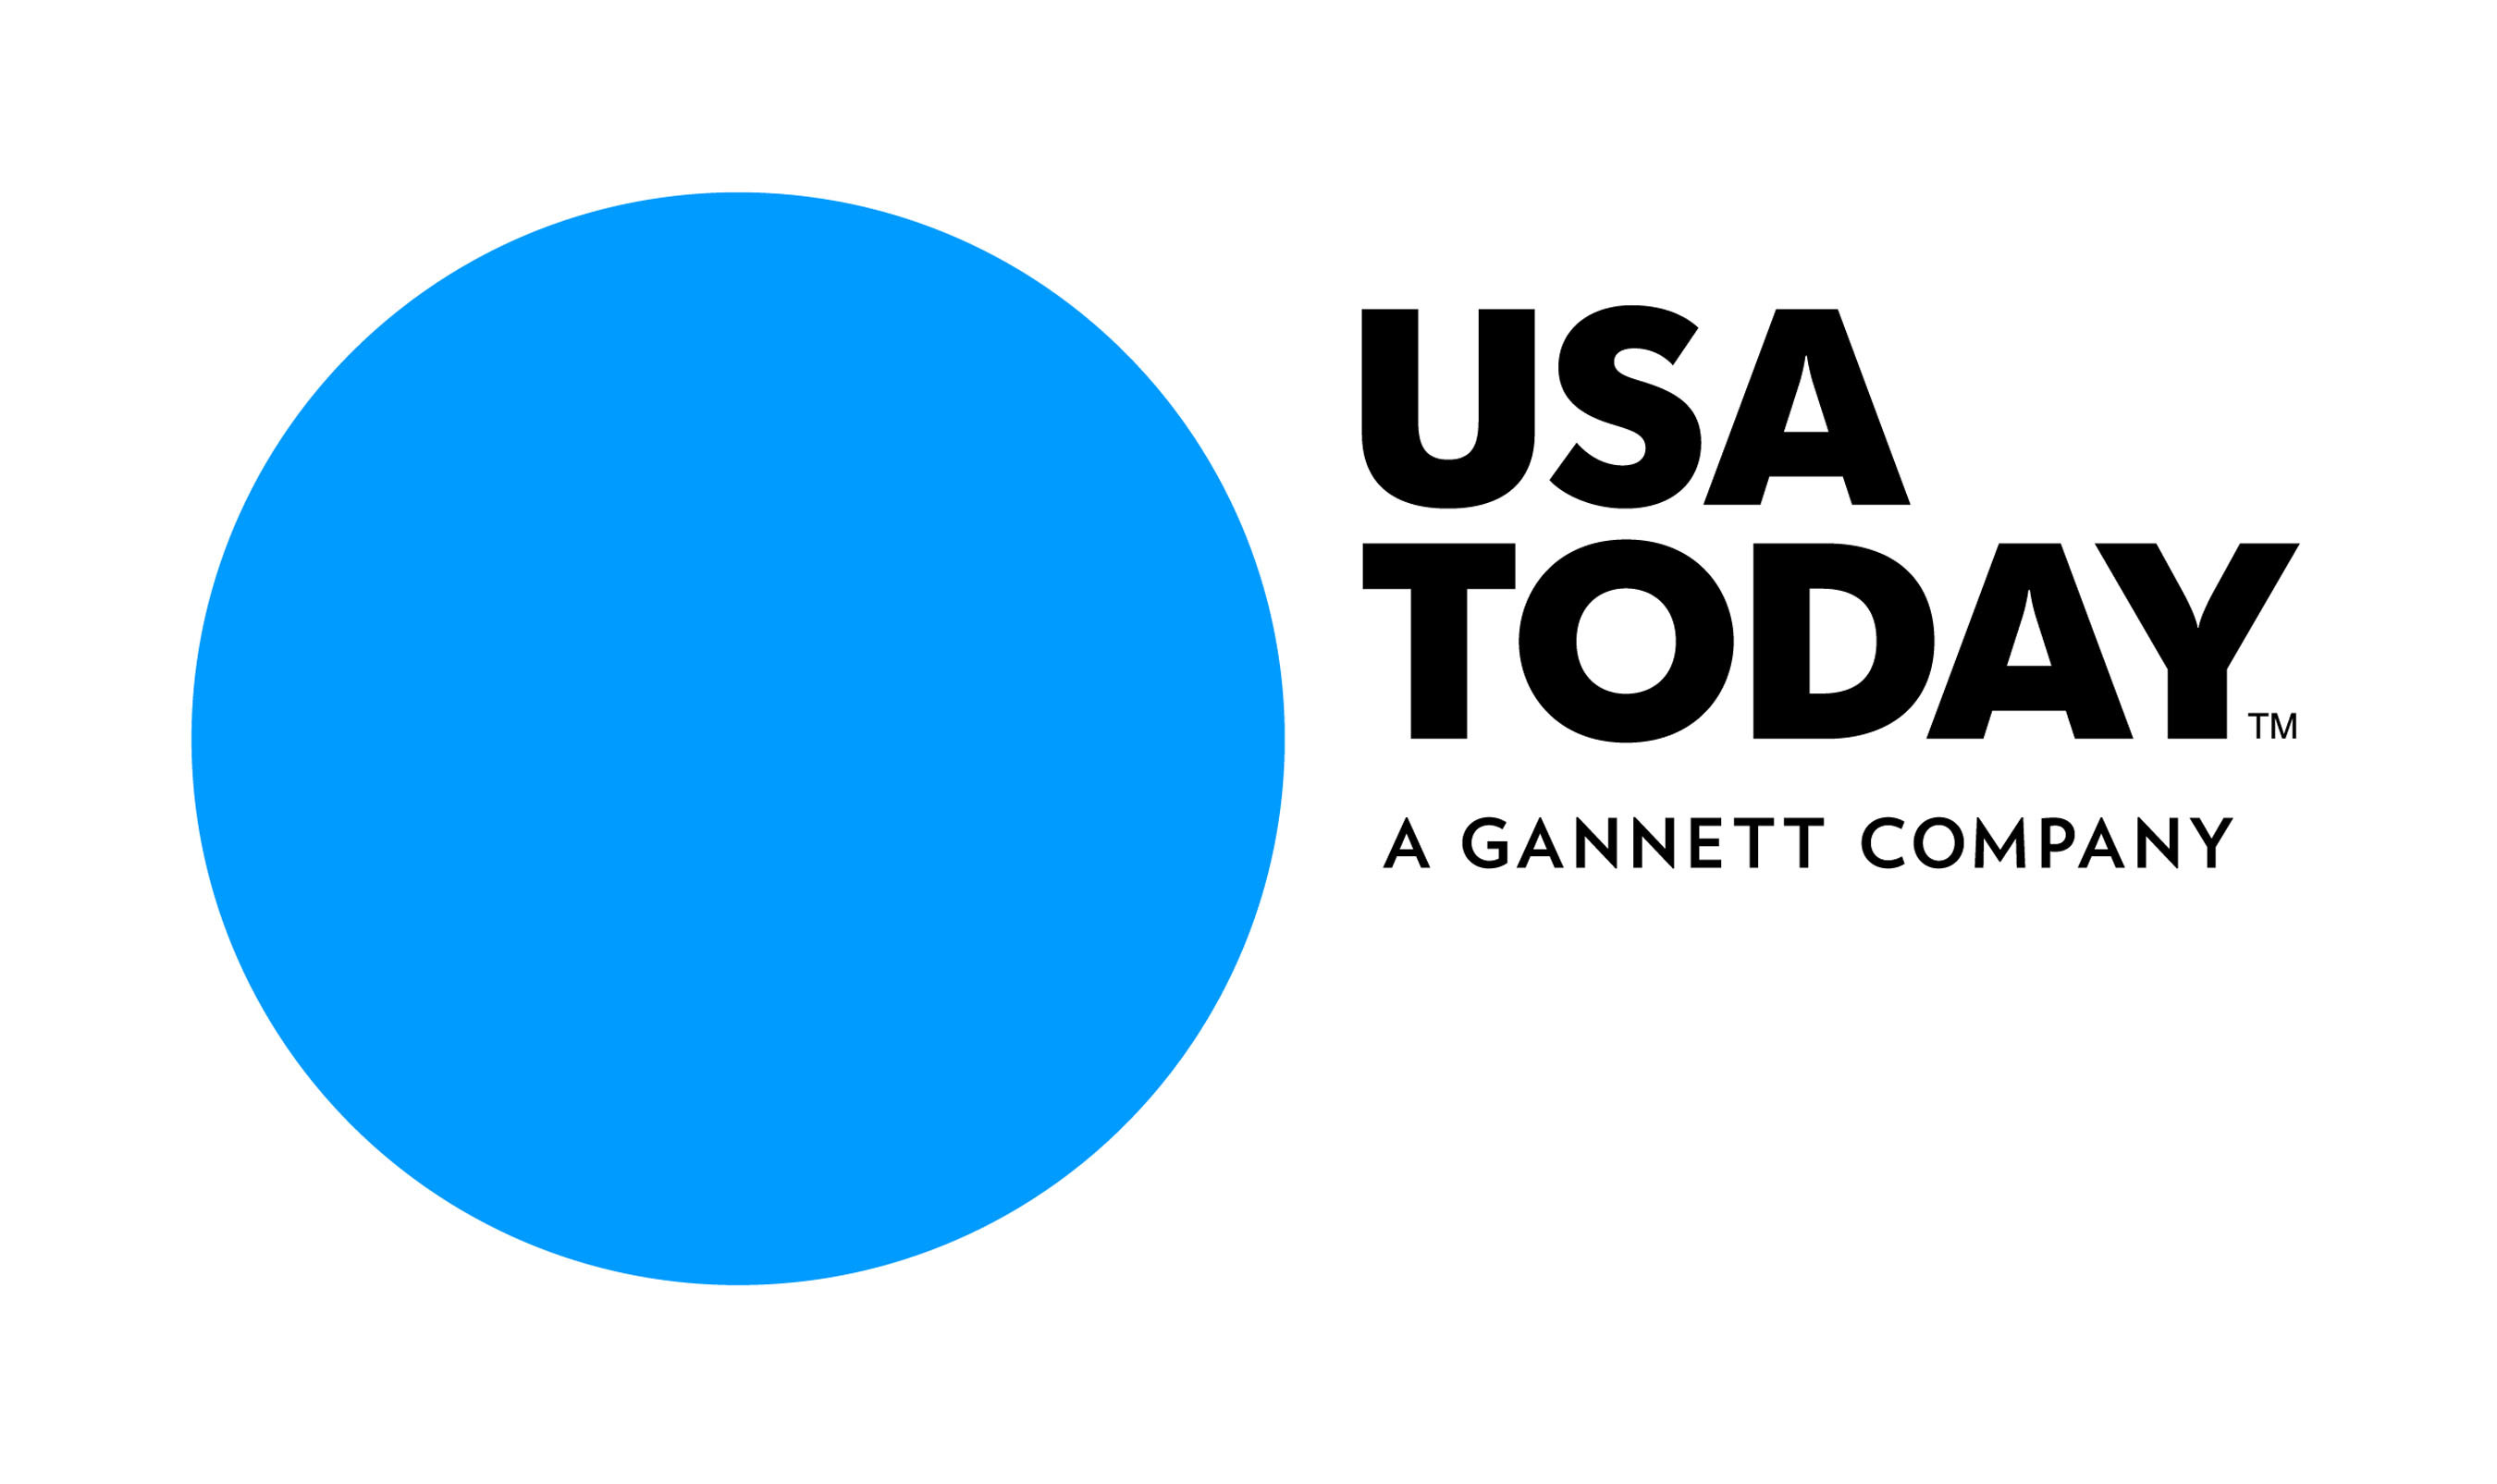 USA TODAY Logo. (PRNewsFoto/USA TODAY) (PRNewsFoto/)